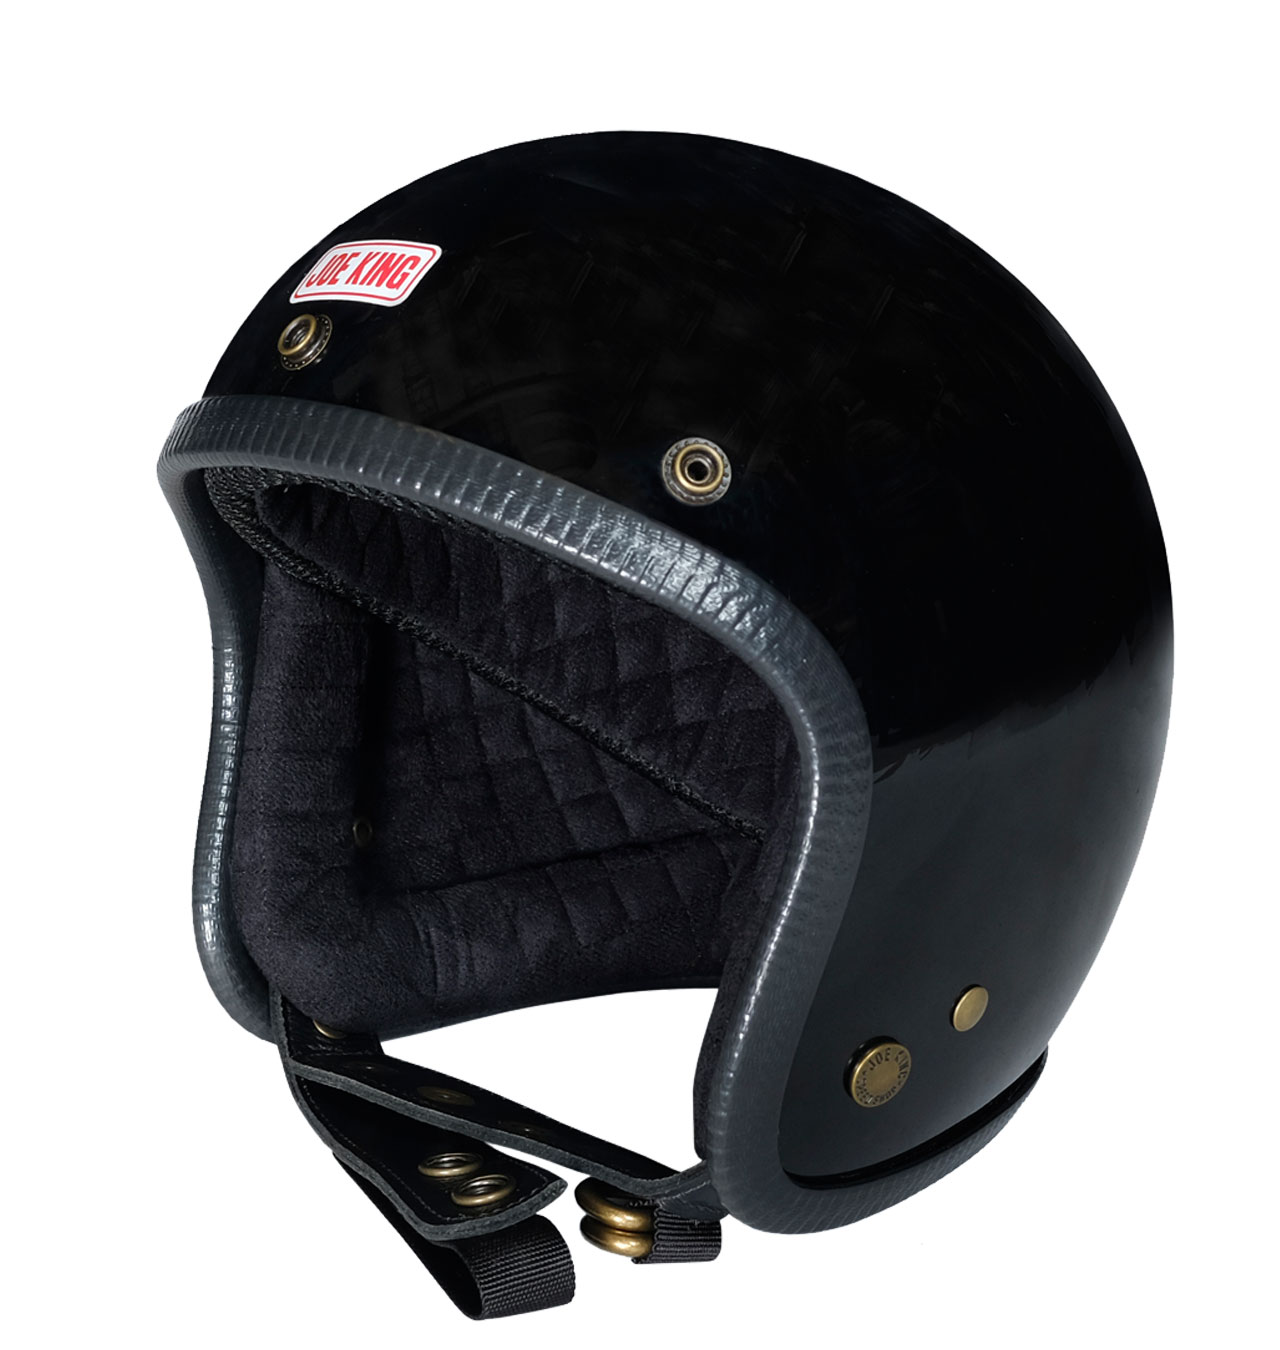 Joe King - JK400 Helmet Gloss Black/Black - Black Trim